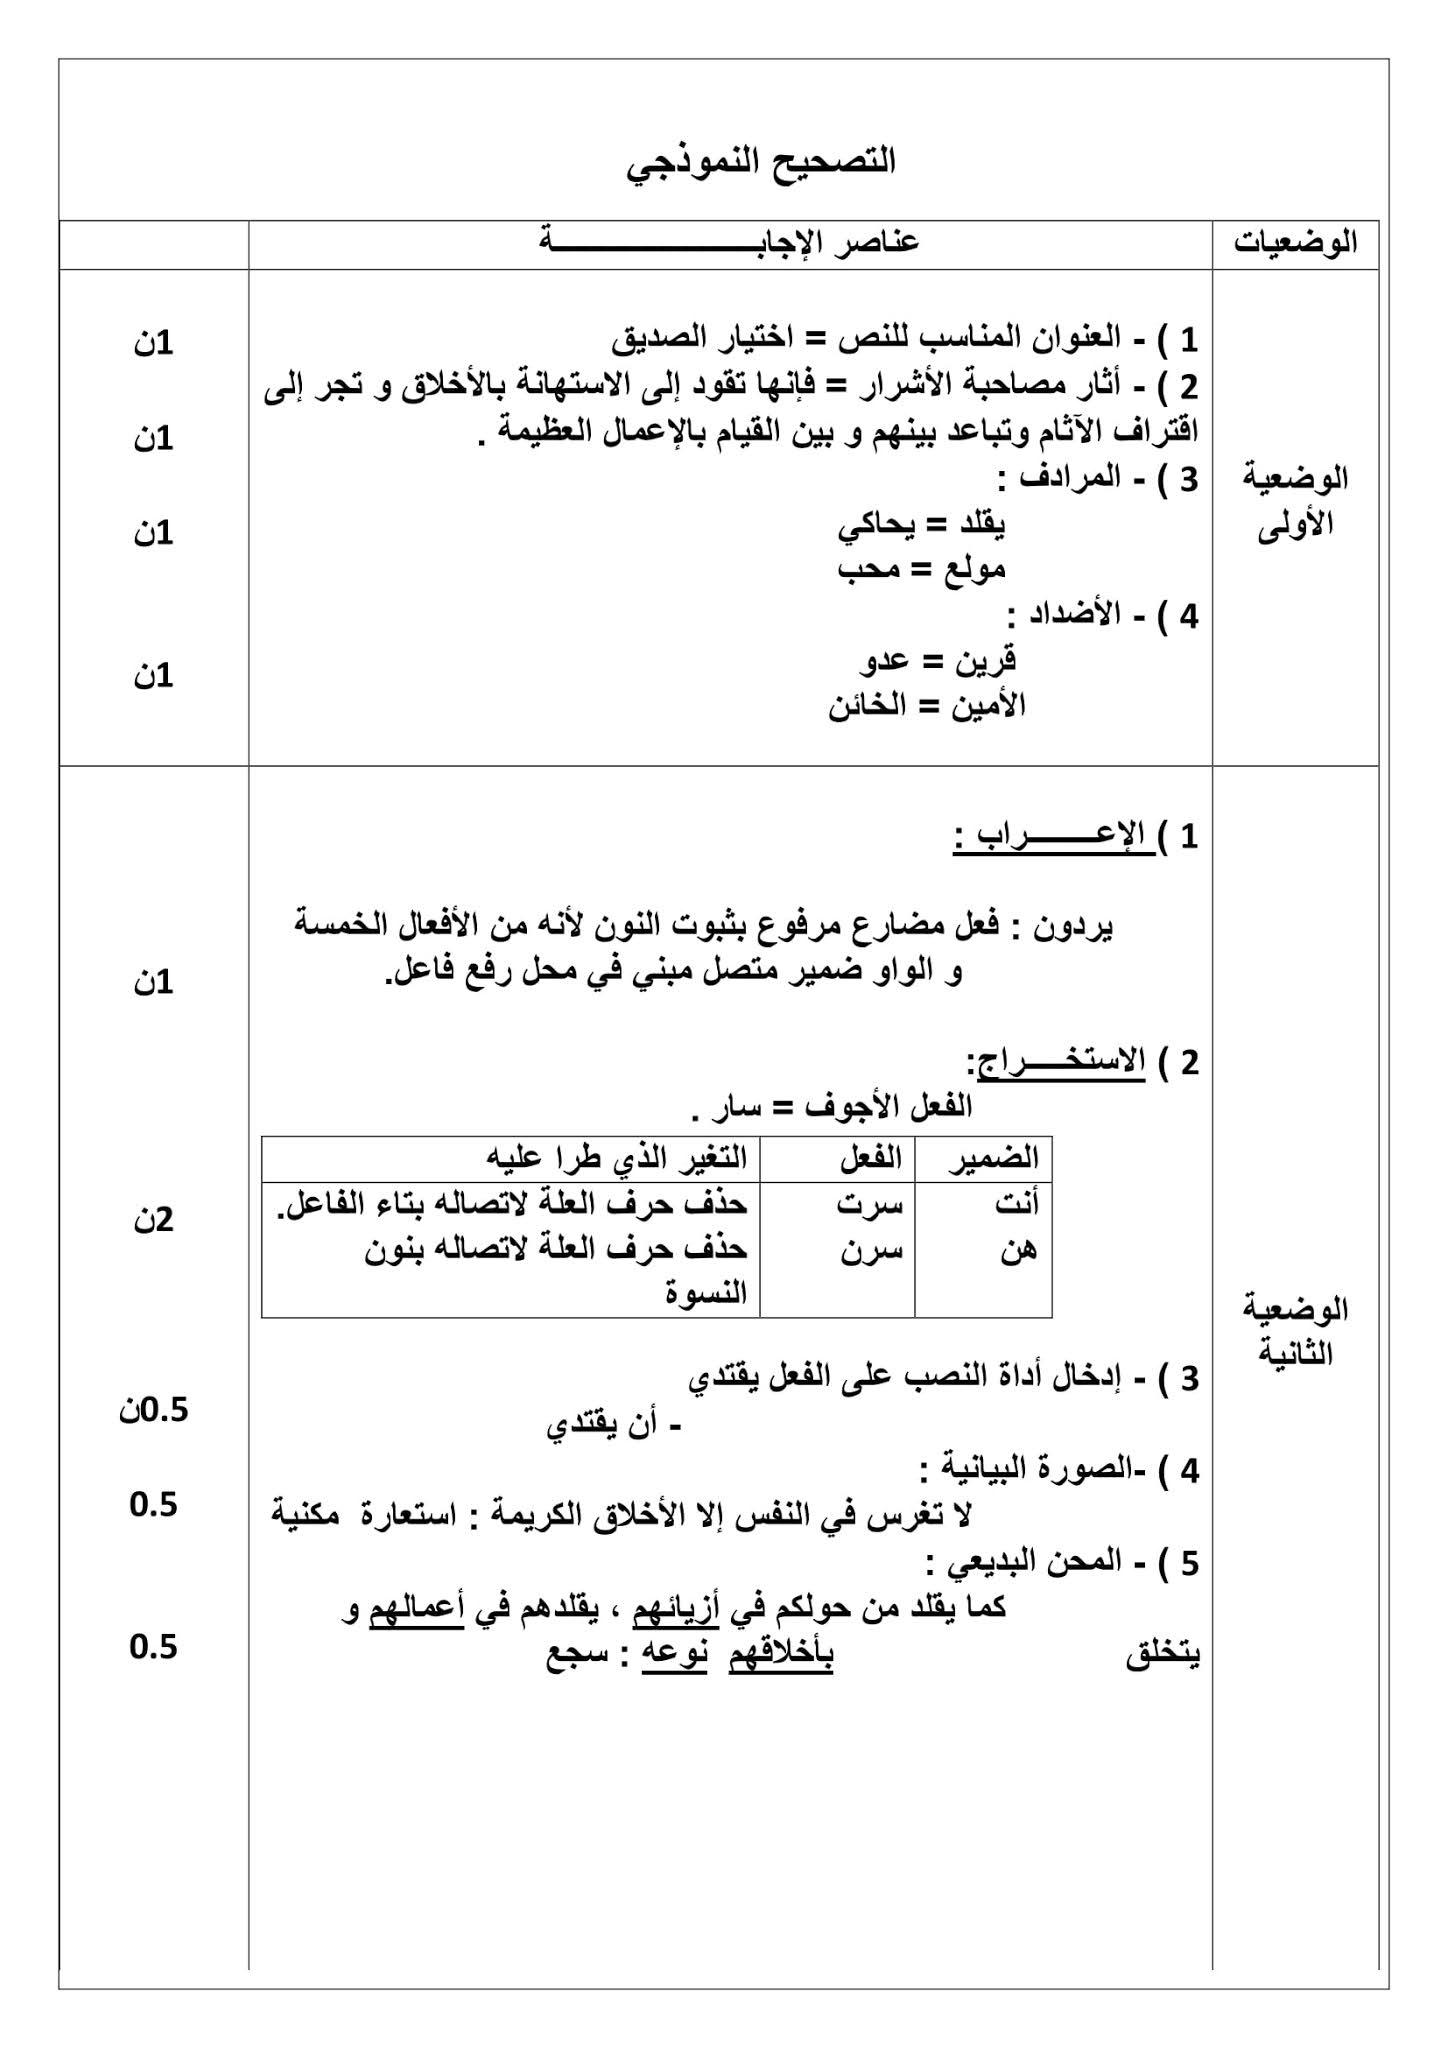 فرض اللغة العربية الفصل الثاني للسنة الثانية متوسط - الجيل الثاني نموذج 3